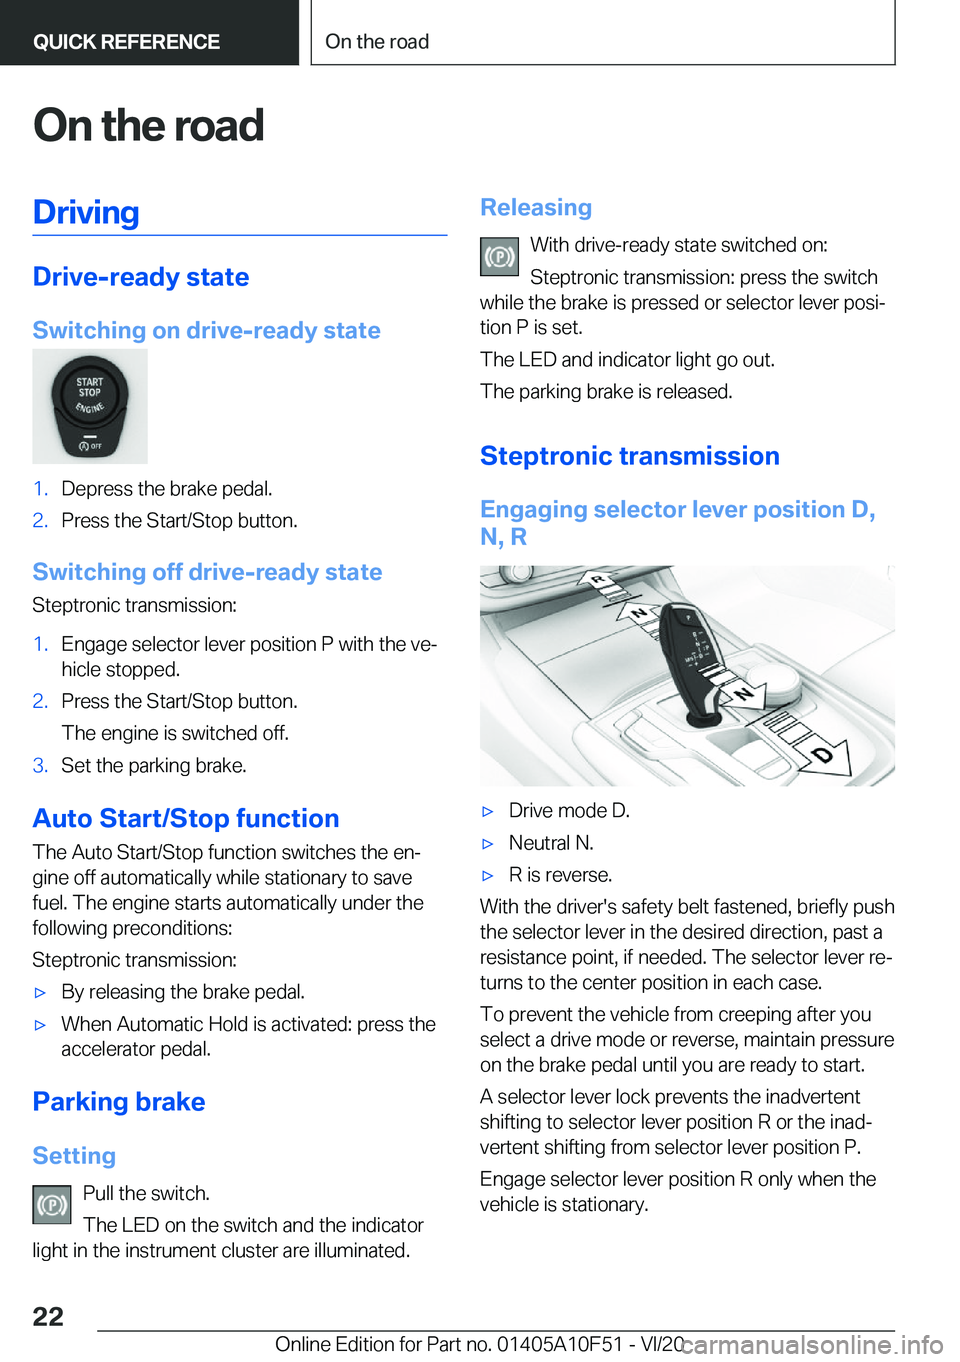 BMW X4 2021 Owners Manual �O�n��t�h�e��r�o�a�d�D�r�i�v�i�n�g
�D�r�i�v�e�-�r�e�a�d�y��s�t�a�t�e
�S�w�i�t�c�h�i�n�g��o�n��d�r�i�v�e�-�r�e�a�d�y��s�t�a�t�e
�1�.�D�e�p�r�e�s�s��t�h�e��b�r�a�k�e��p�e�d�a�l�.�2�.�P�r�e�s�s�